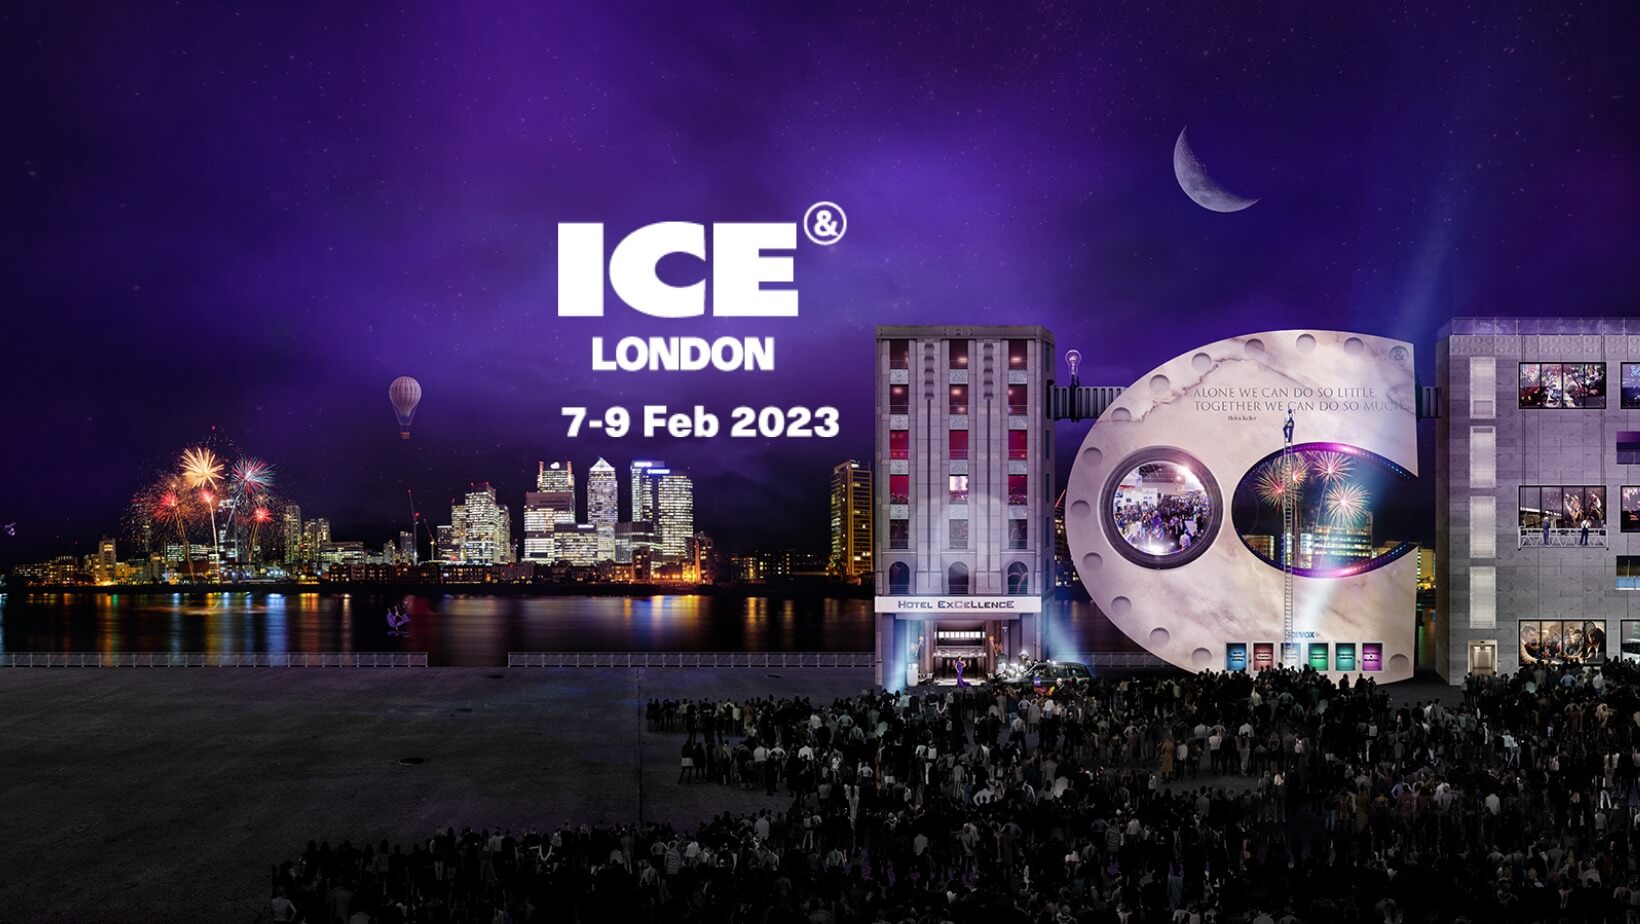 ICE Londres 2023: Más protagonismo para la Zona de Protección al Consumidor